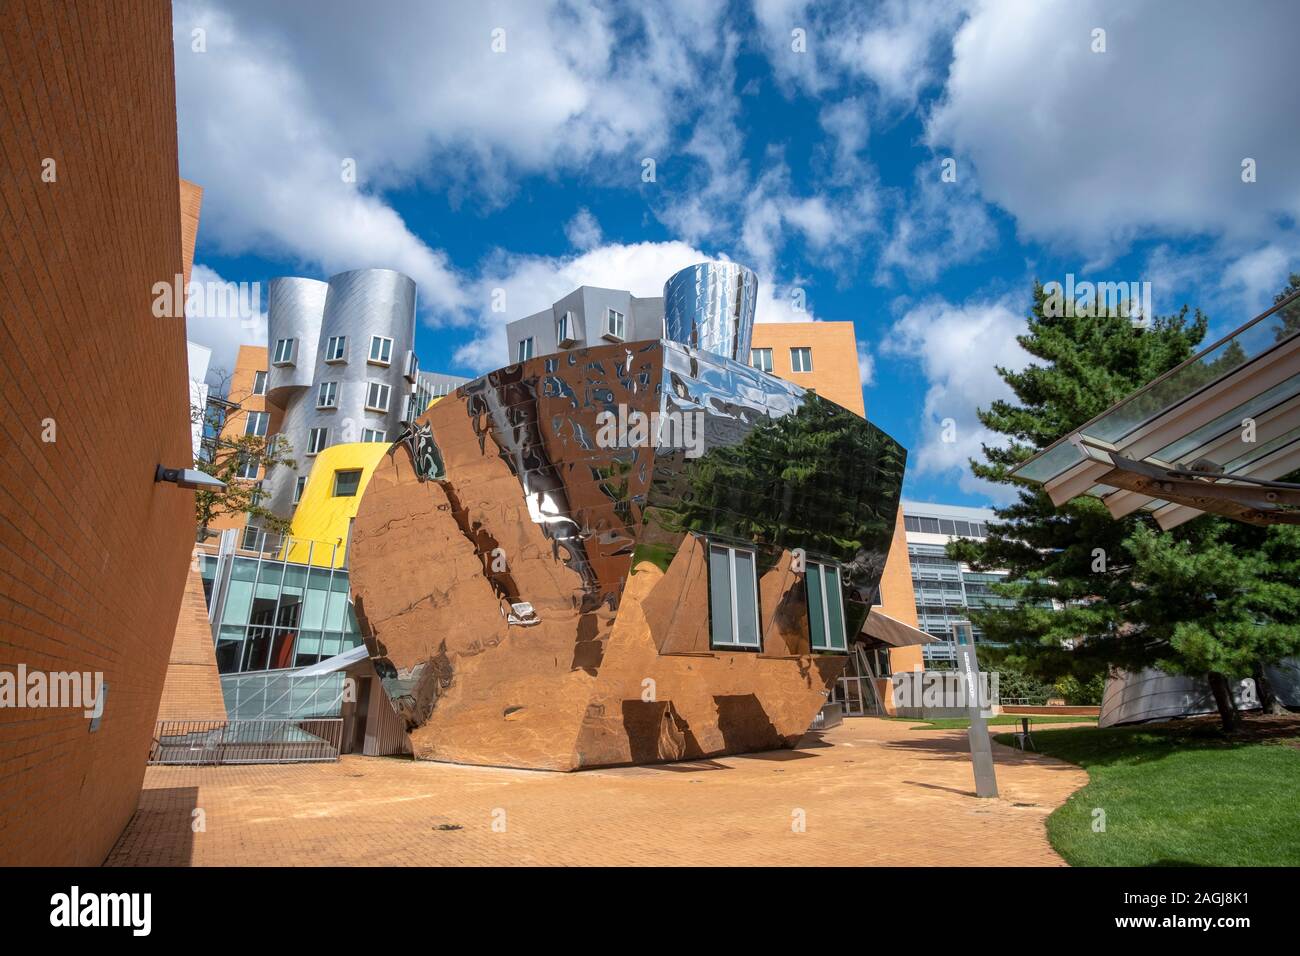 Der Ray und Maria Stata Center von Frank Gehry entworfenen, MIT, Boston. Beispiel für Deconstructionism Architektur. Stockfoto